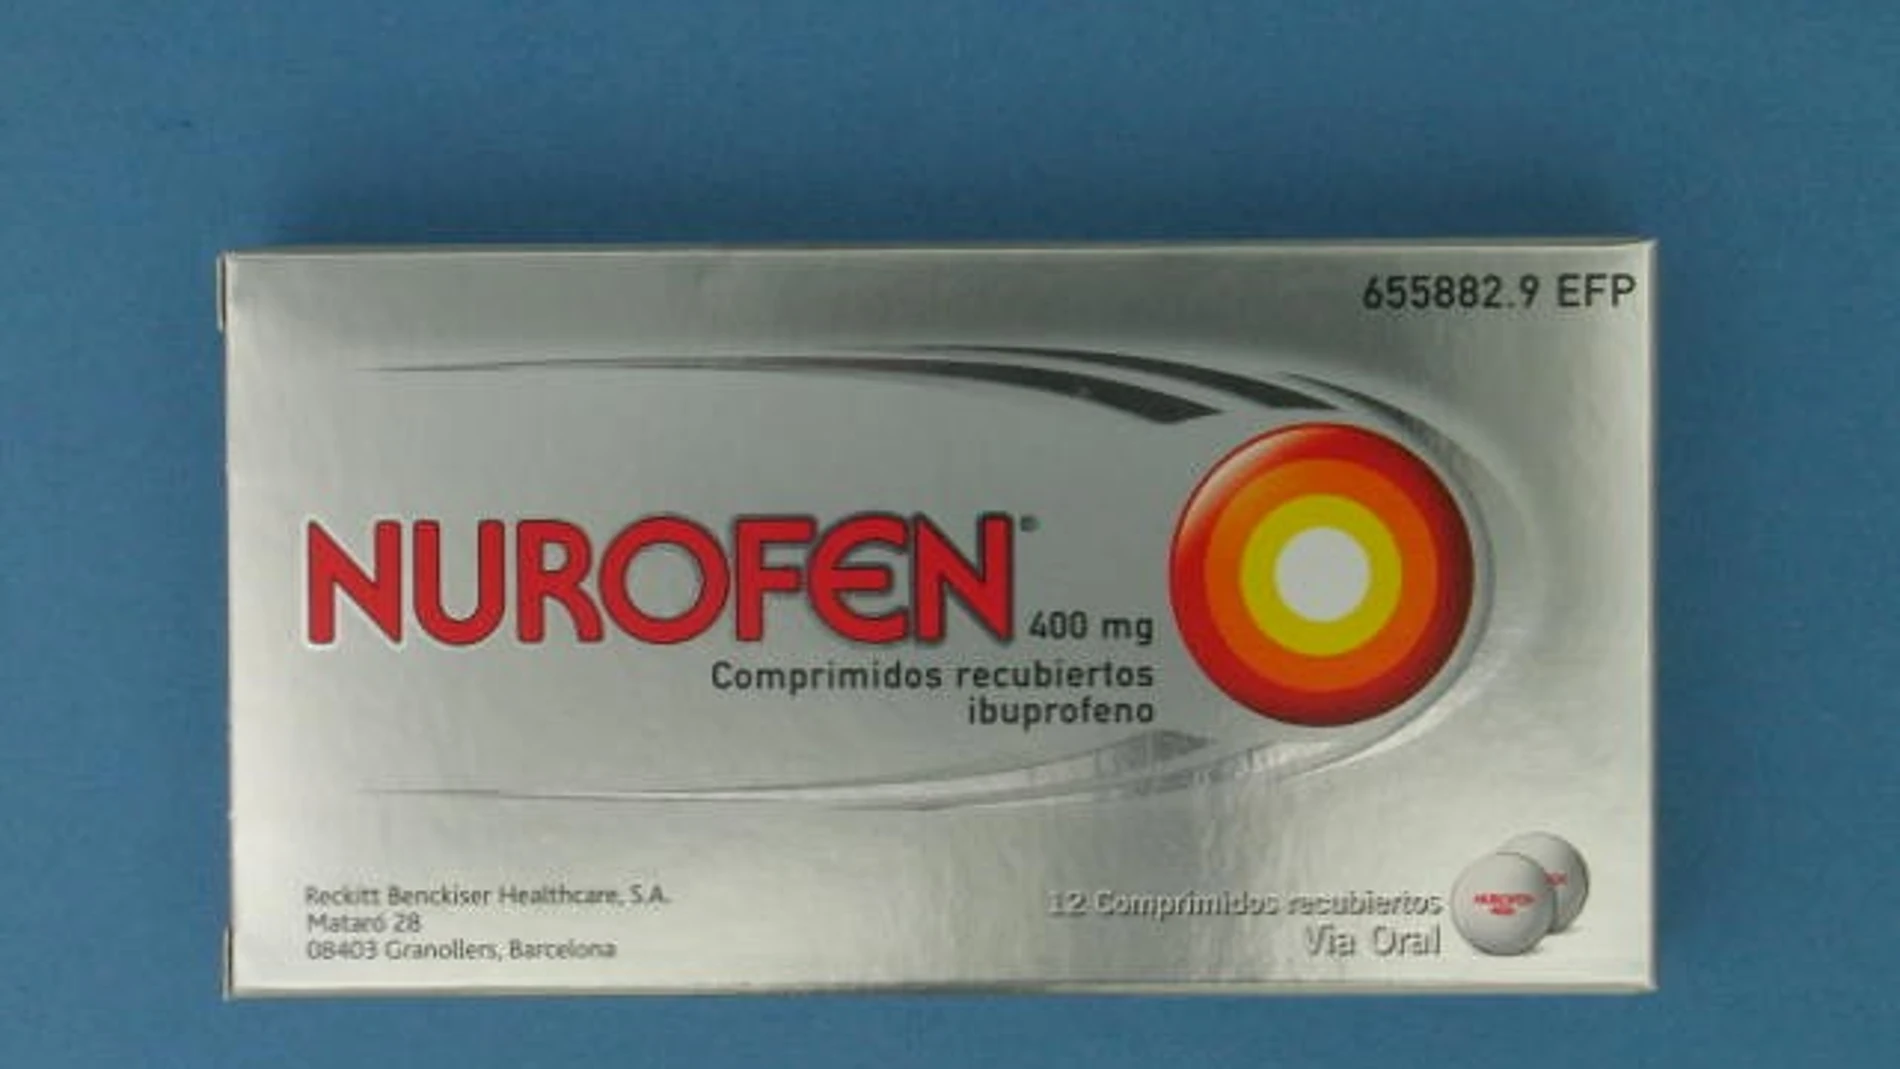 La gama de Nurofen era "inherentemente engañosa"porque todos los productos contenían el mismo ingrediente activo